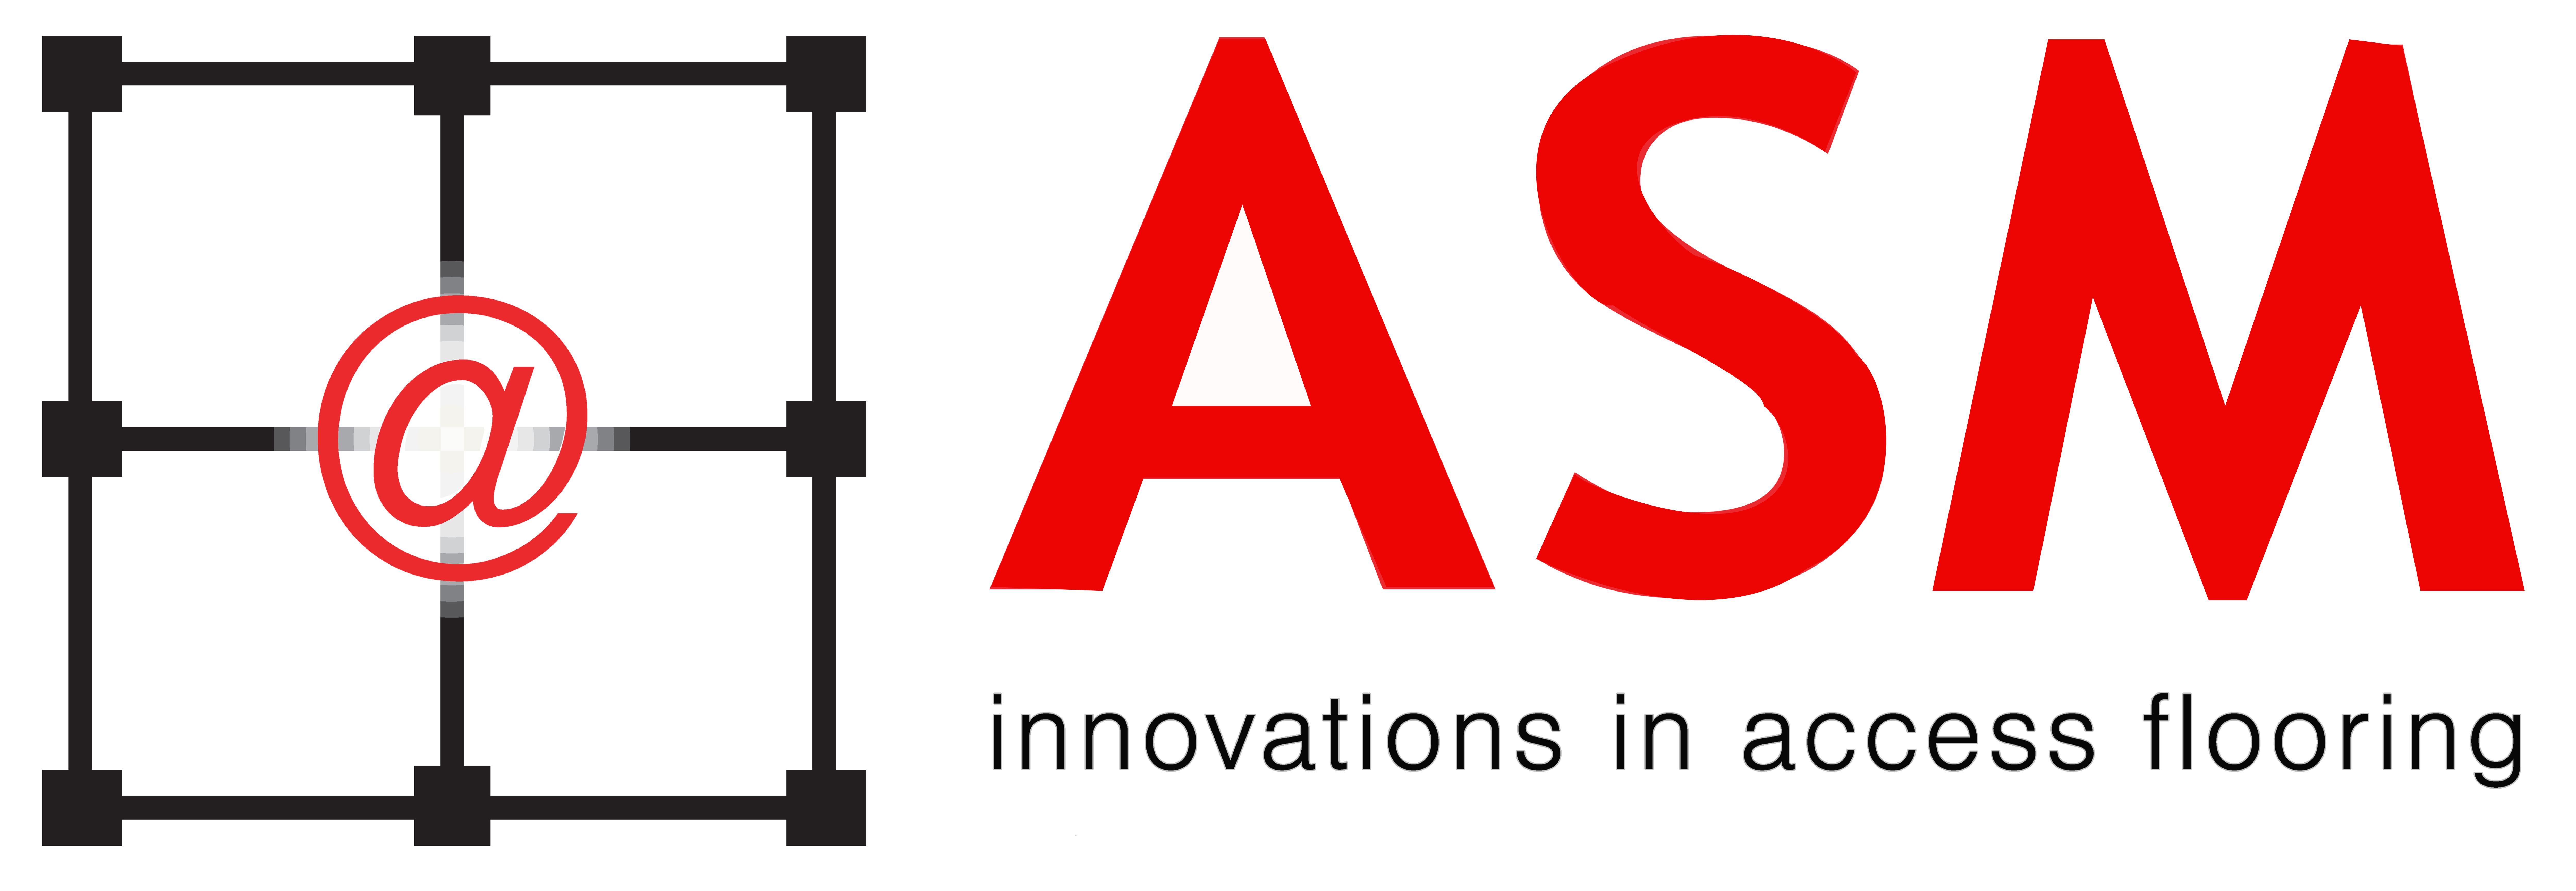 ASM logo